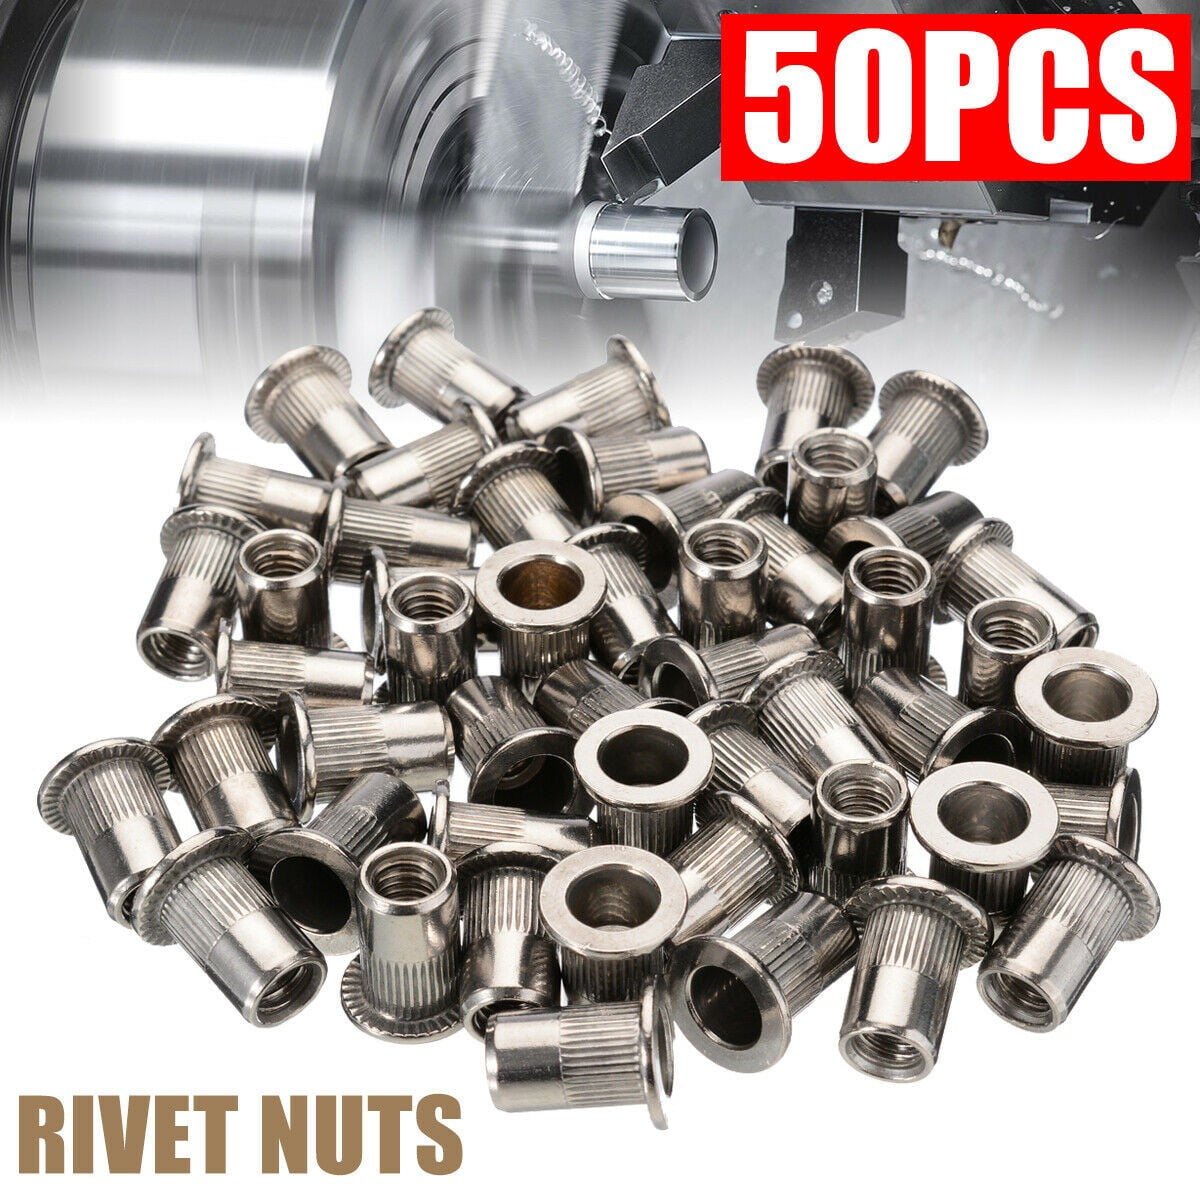 Threaded Insert METRIC Rivet Nuts M6 20 Pack Steel Blind Nut Fasteners 